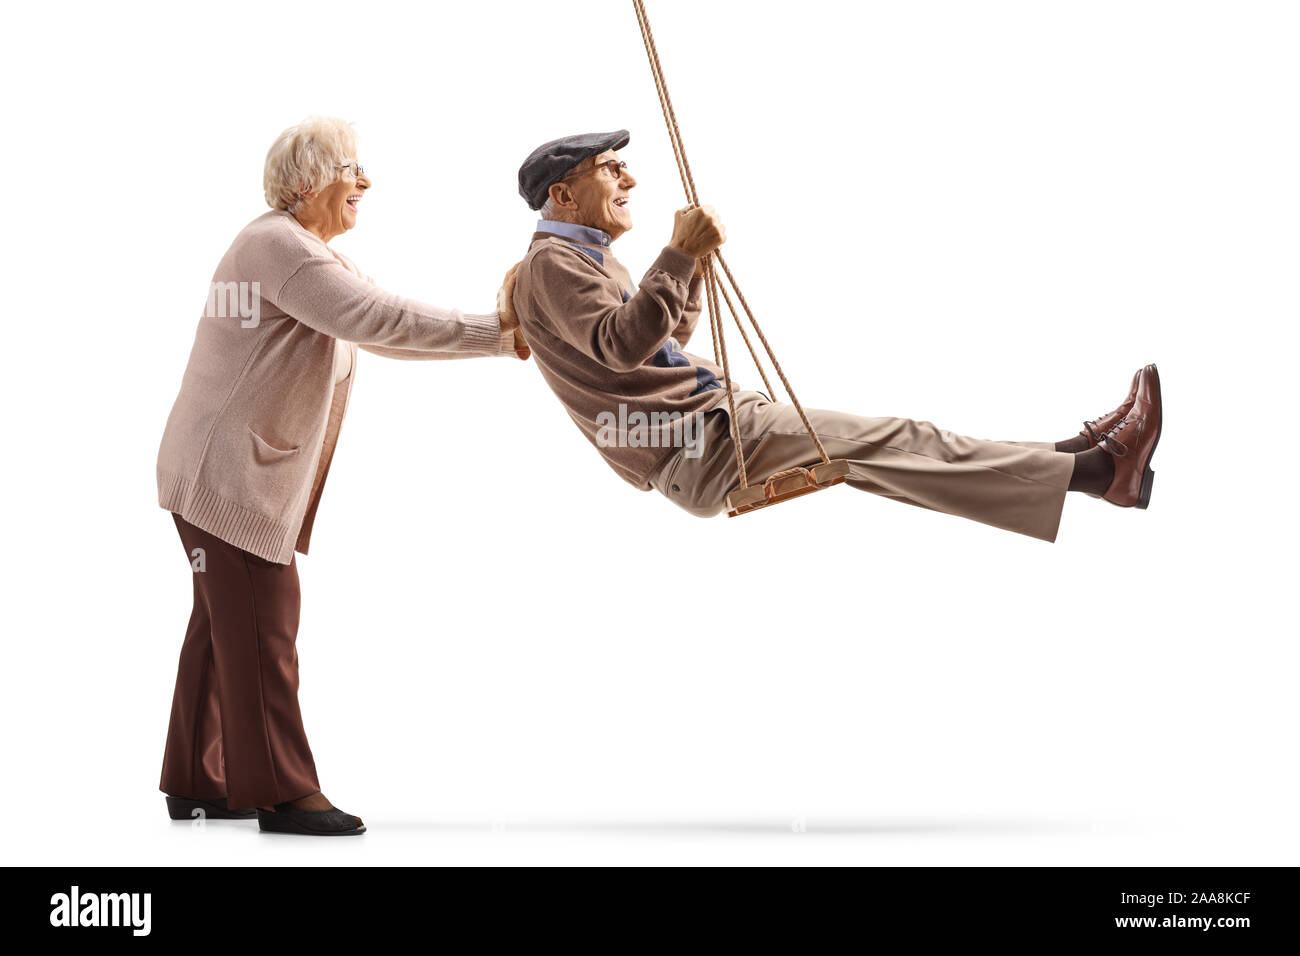 Lunghezza piena ripresa del profilo di una donna senior spingendo oscillazione un anziano uomo su una oscillazione in legno isolato su sfondo bianco Foto Stock